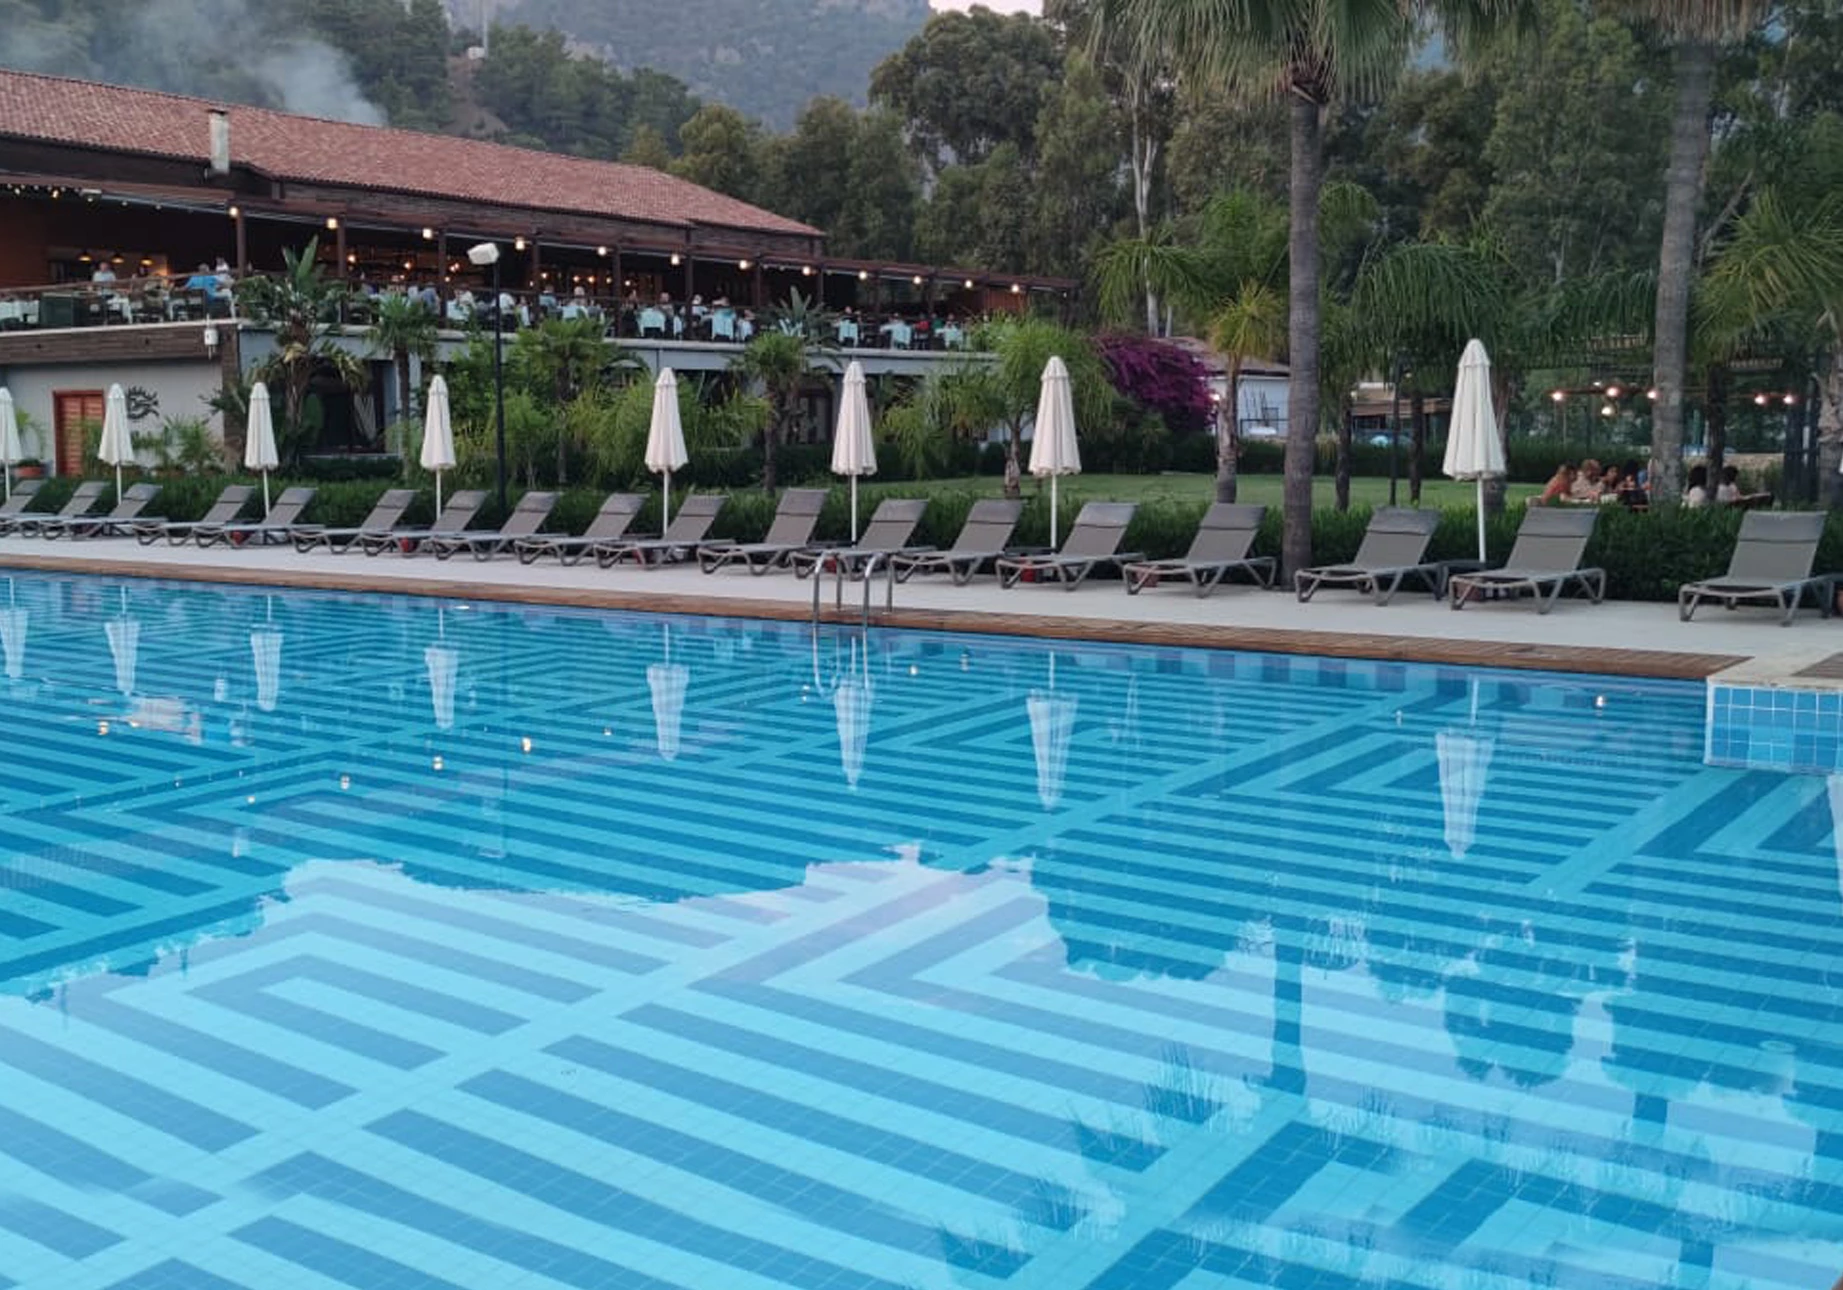 Rixos Hotel Pool